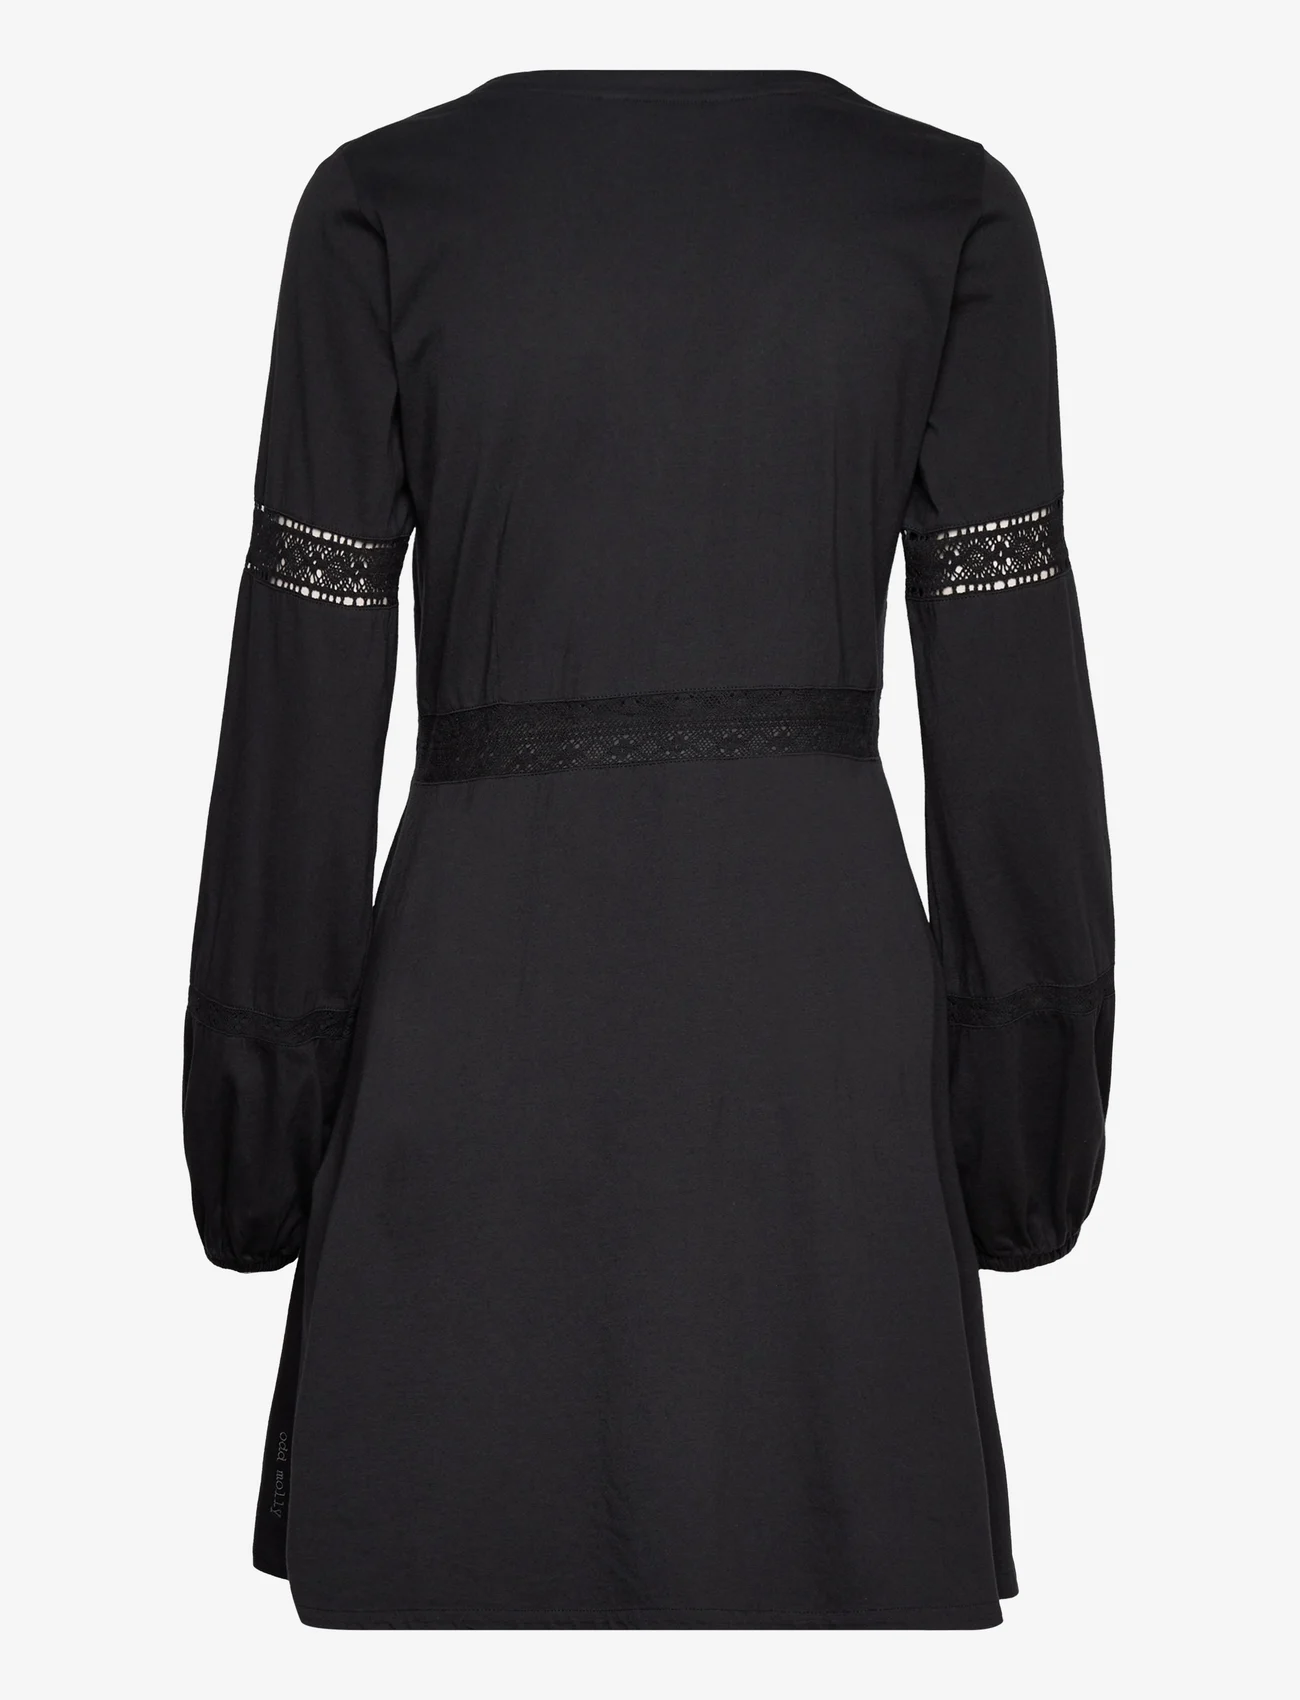 ODD MOLLY - Ariella Dress - krótkie sukienki - almost black - 1